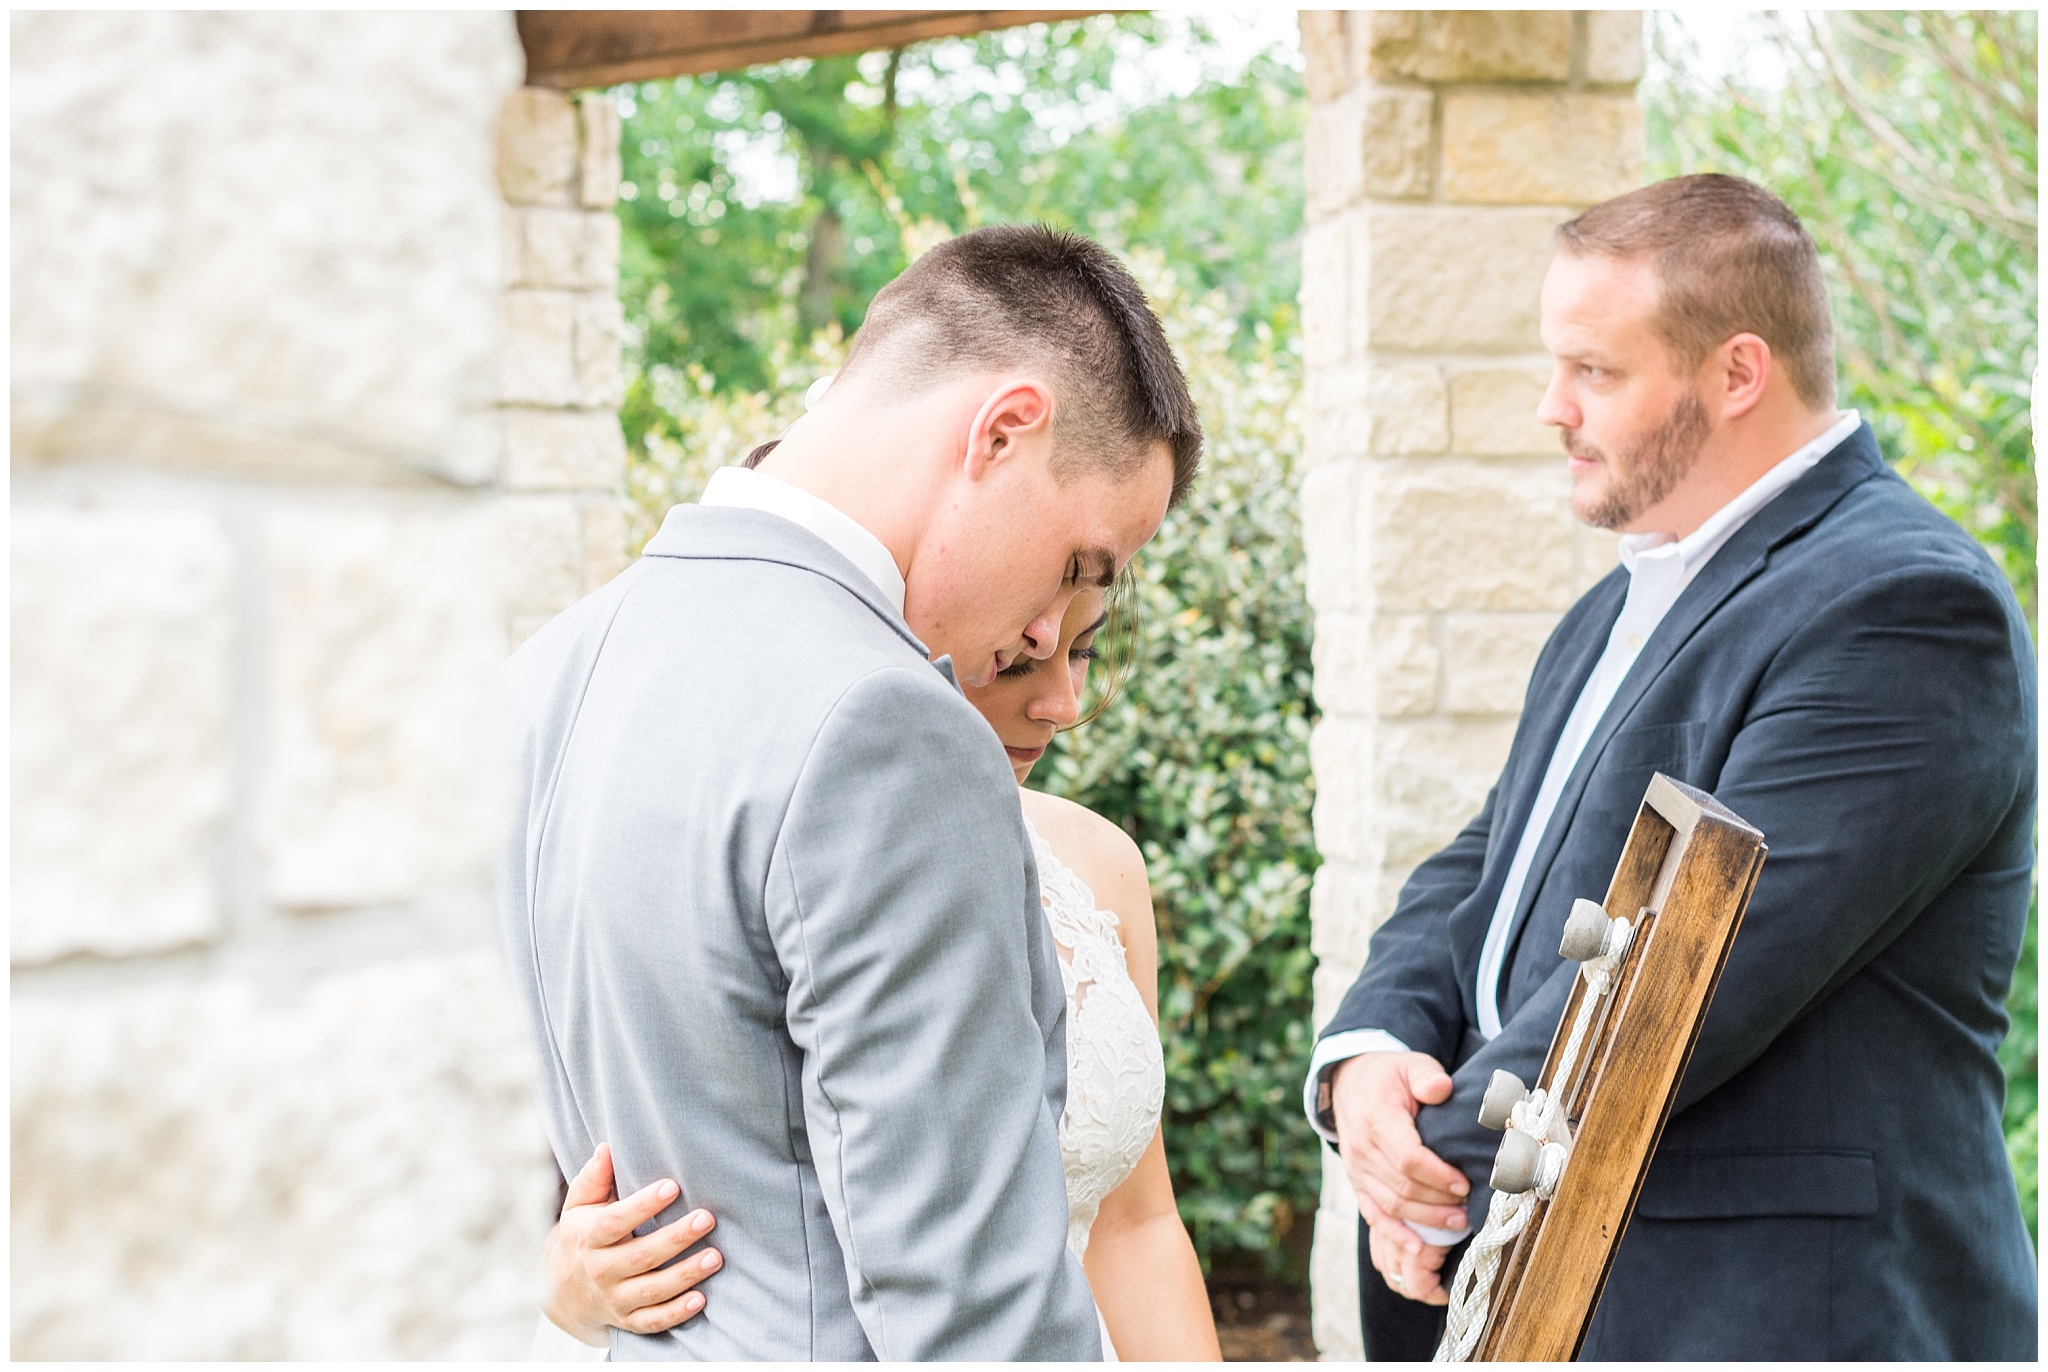 Joyful and Intimate Backyard Wedding Cypress Texas-2017-06-14_0019